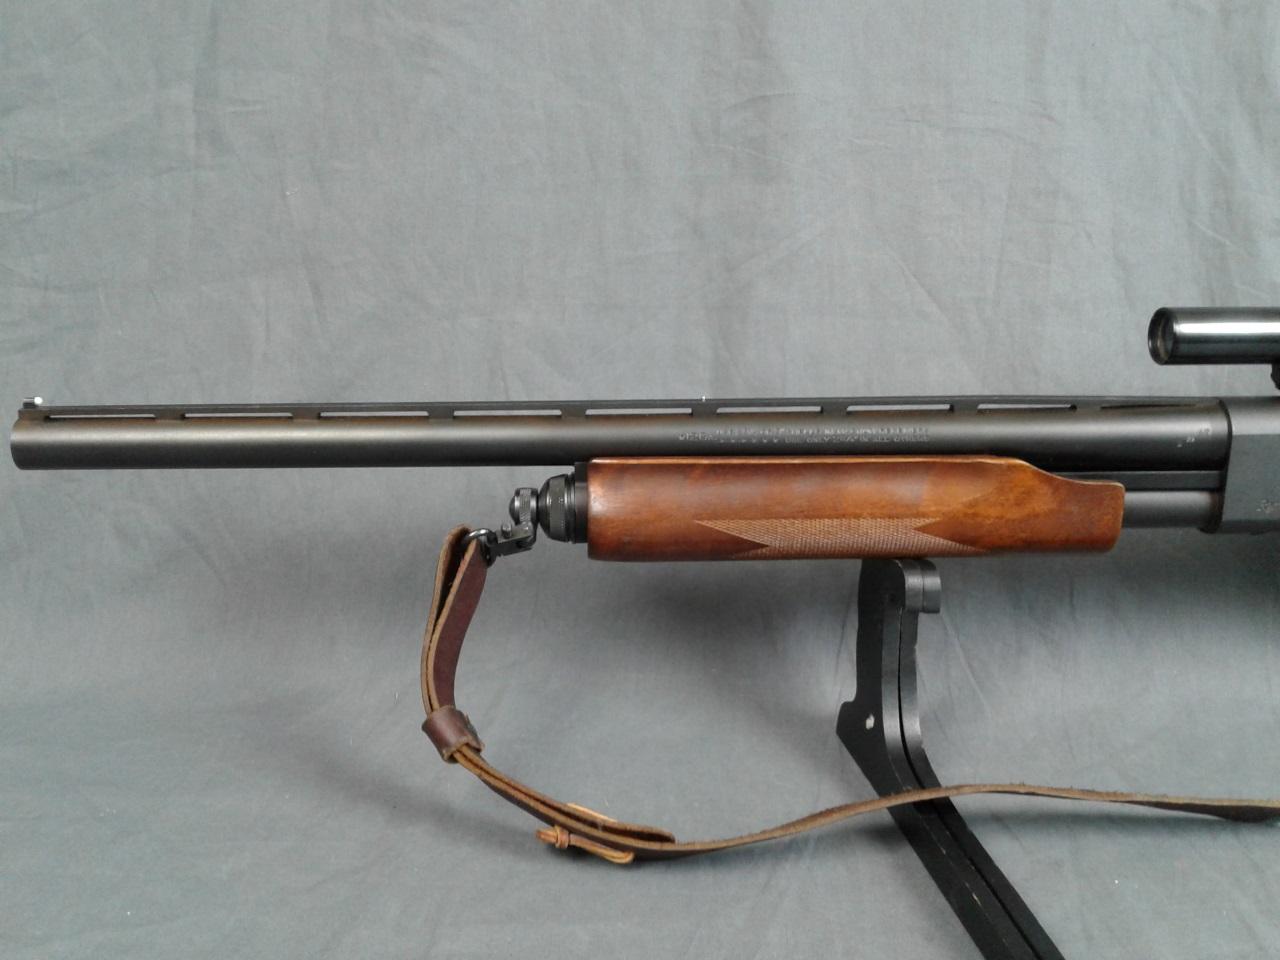 Remington 870 Express Magnum 12ga